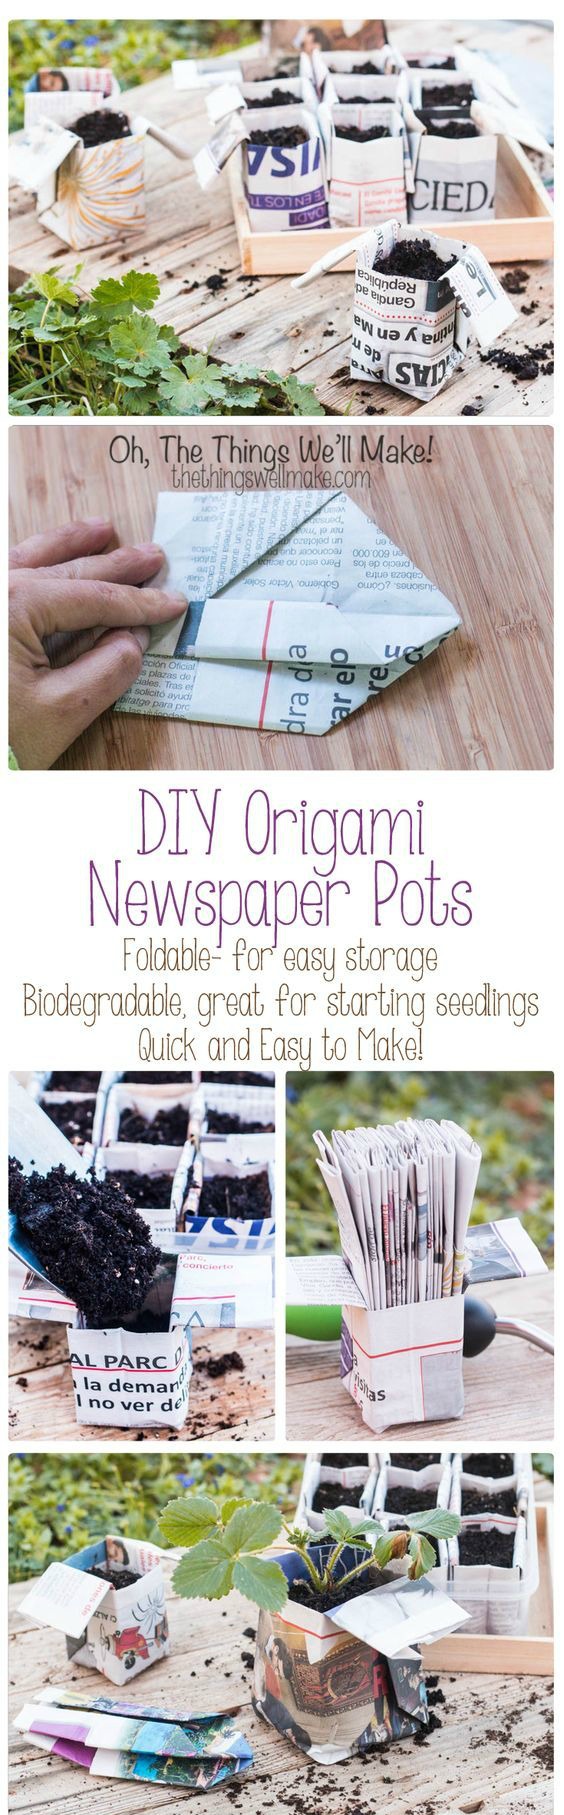 diy-origami-newspaper-pots